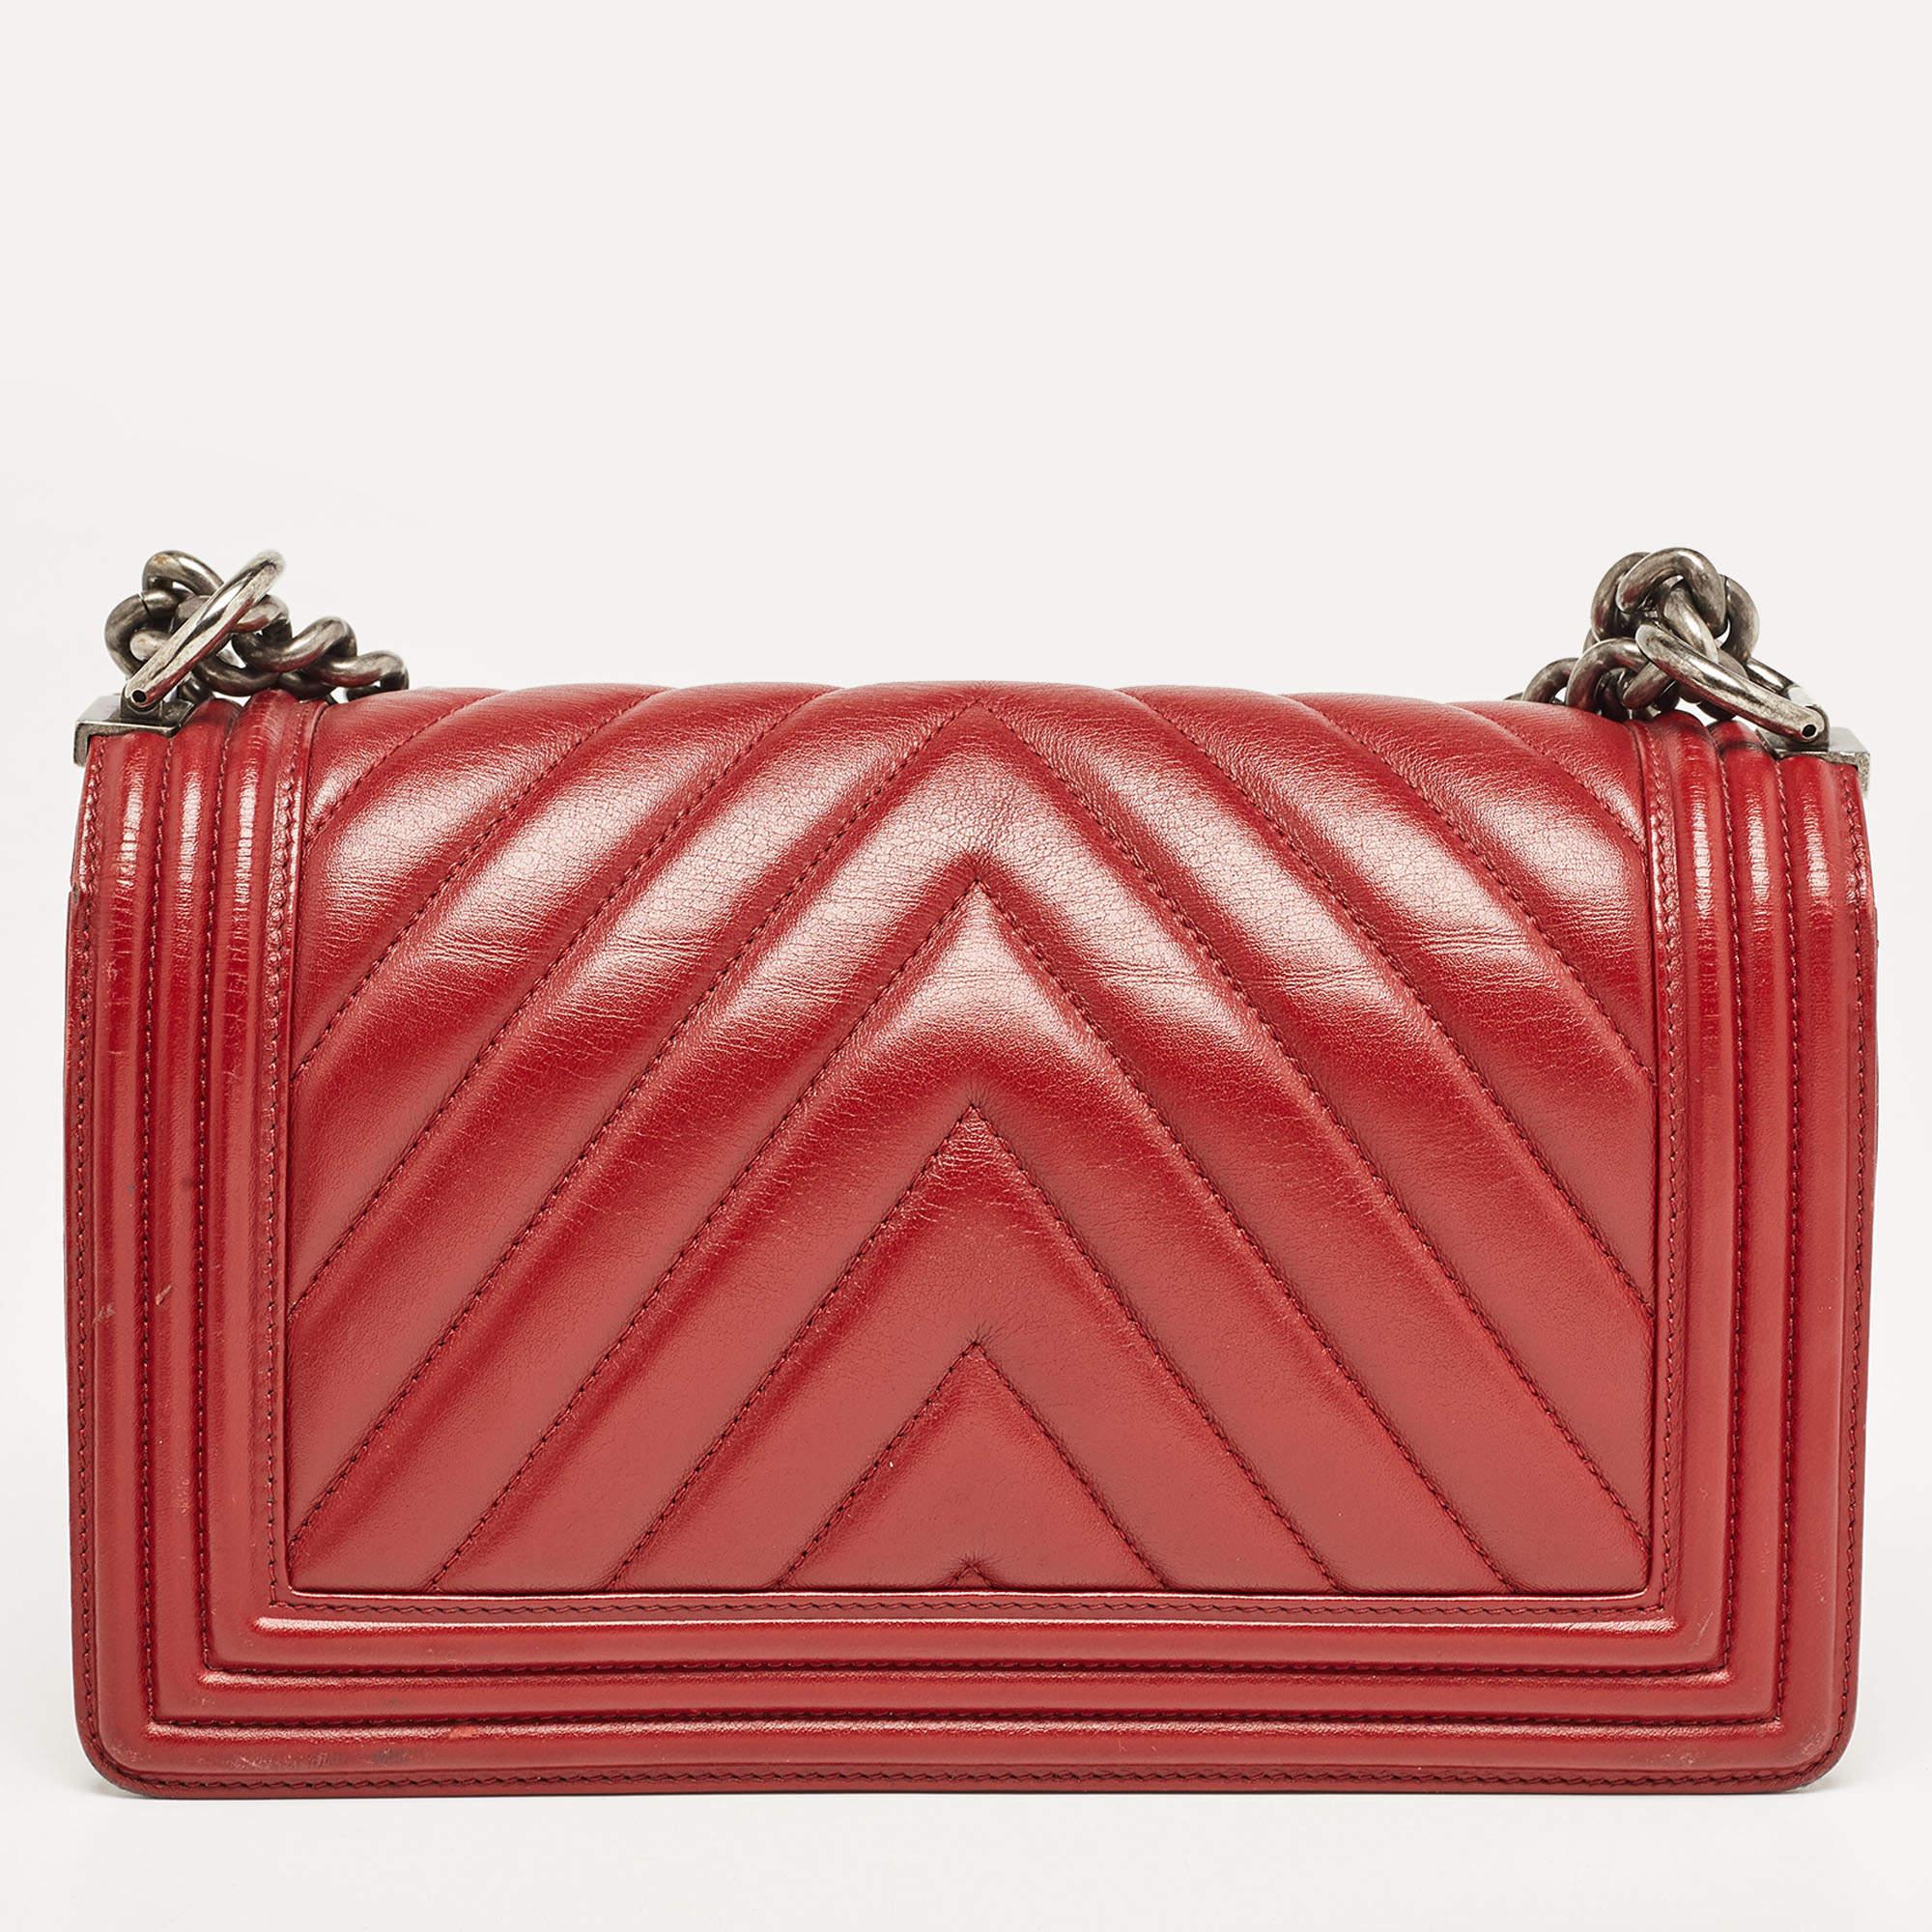 Chanel Red Chevron Leather Medium Boy Bag 12